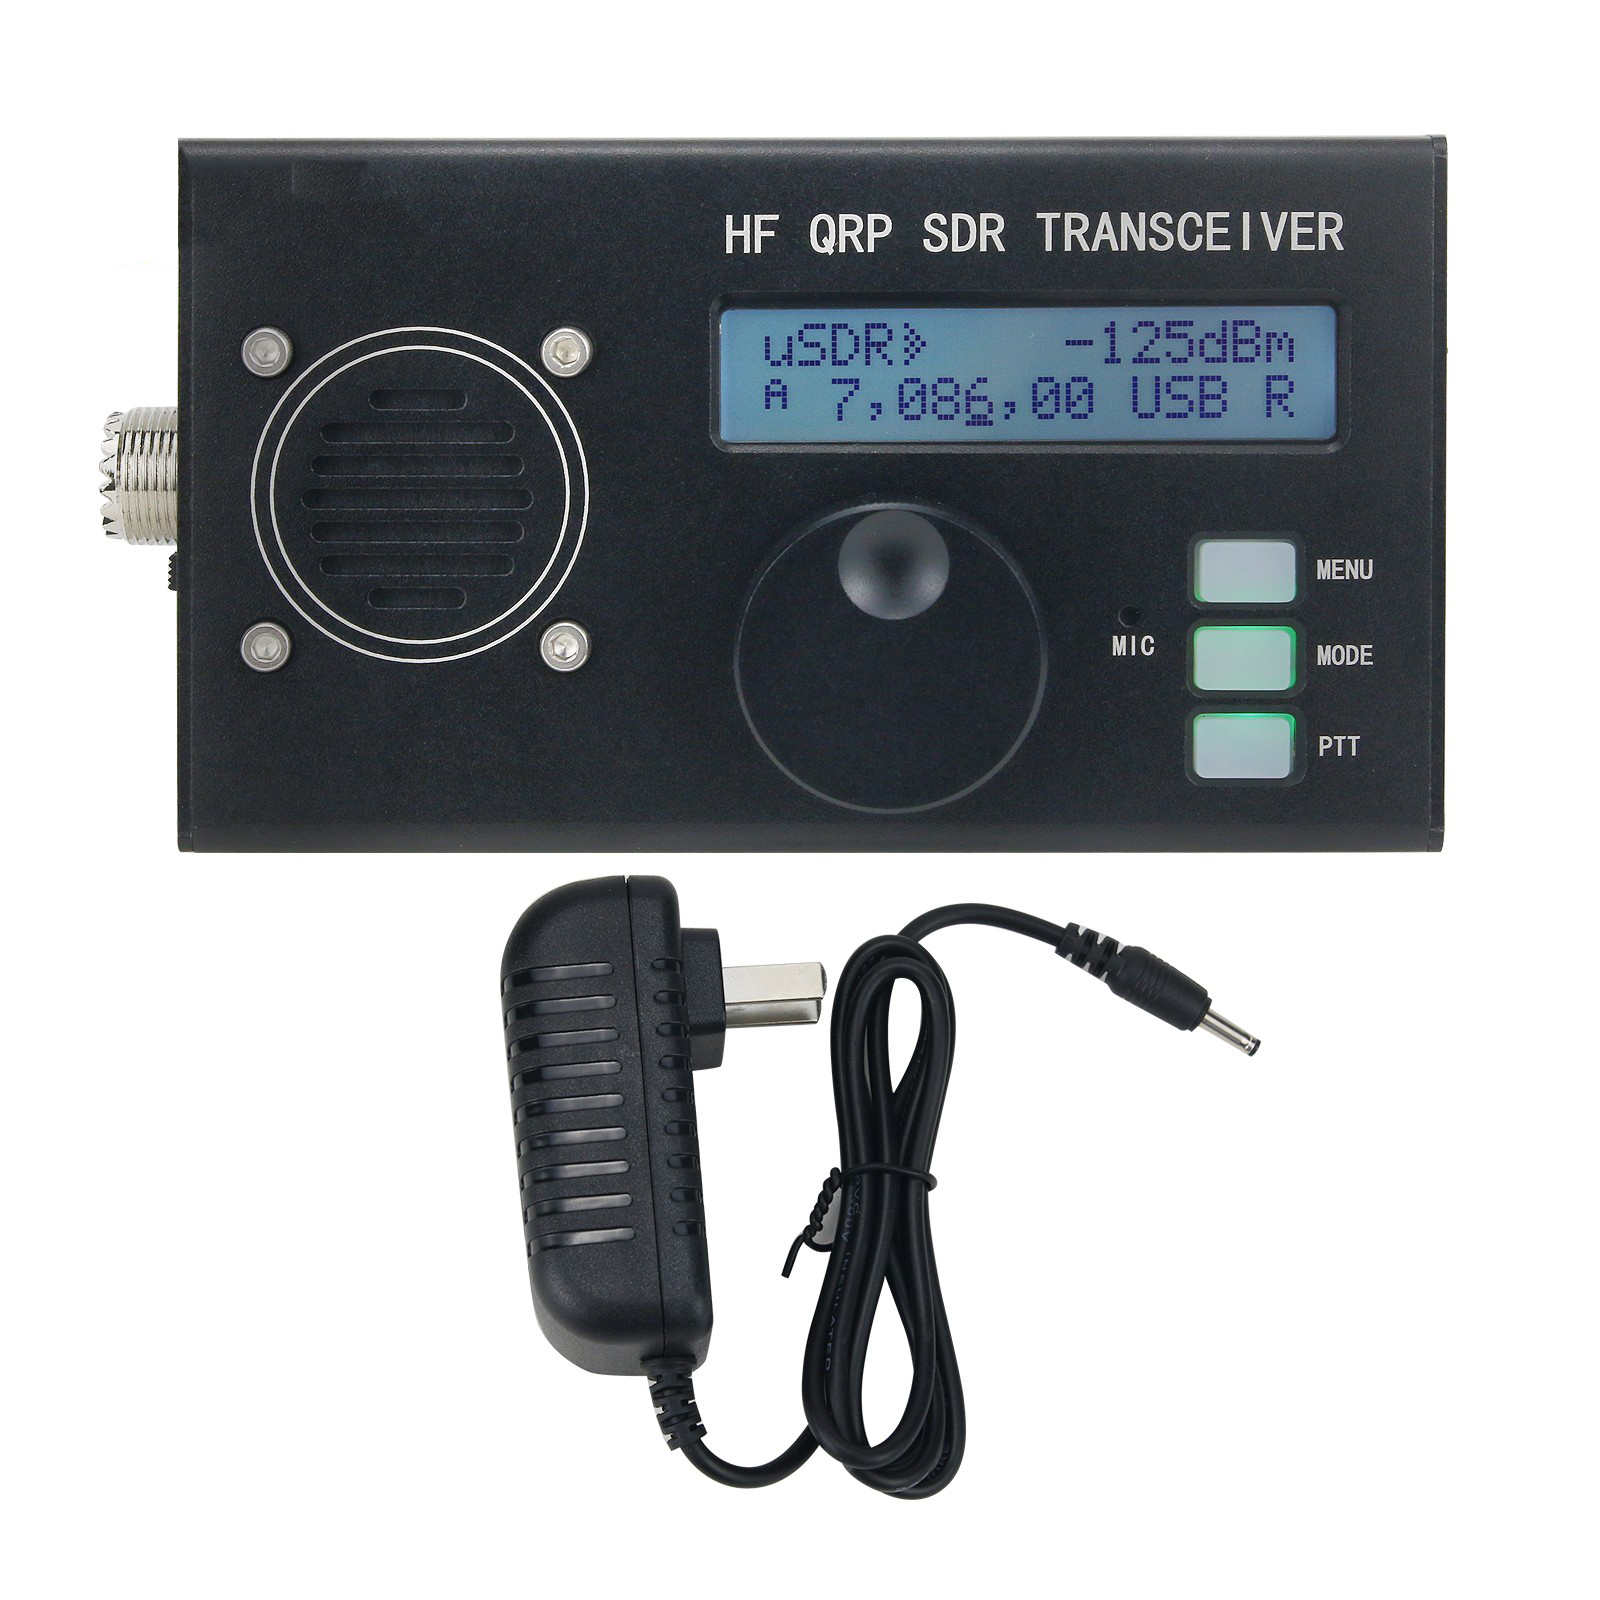 Portable-uSDX-8-Band-SDR-All-Mode-Transceiver-USB-LSB-CW-AM-FM-HF-SSB-QRP-Transceiver-QCX-SSB-with-B-1915485-6